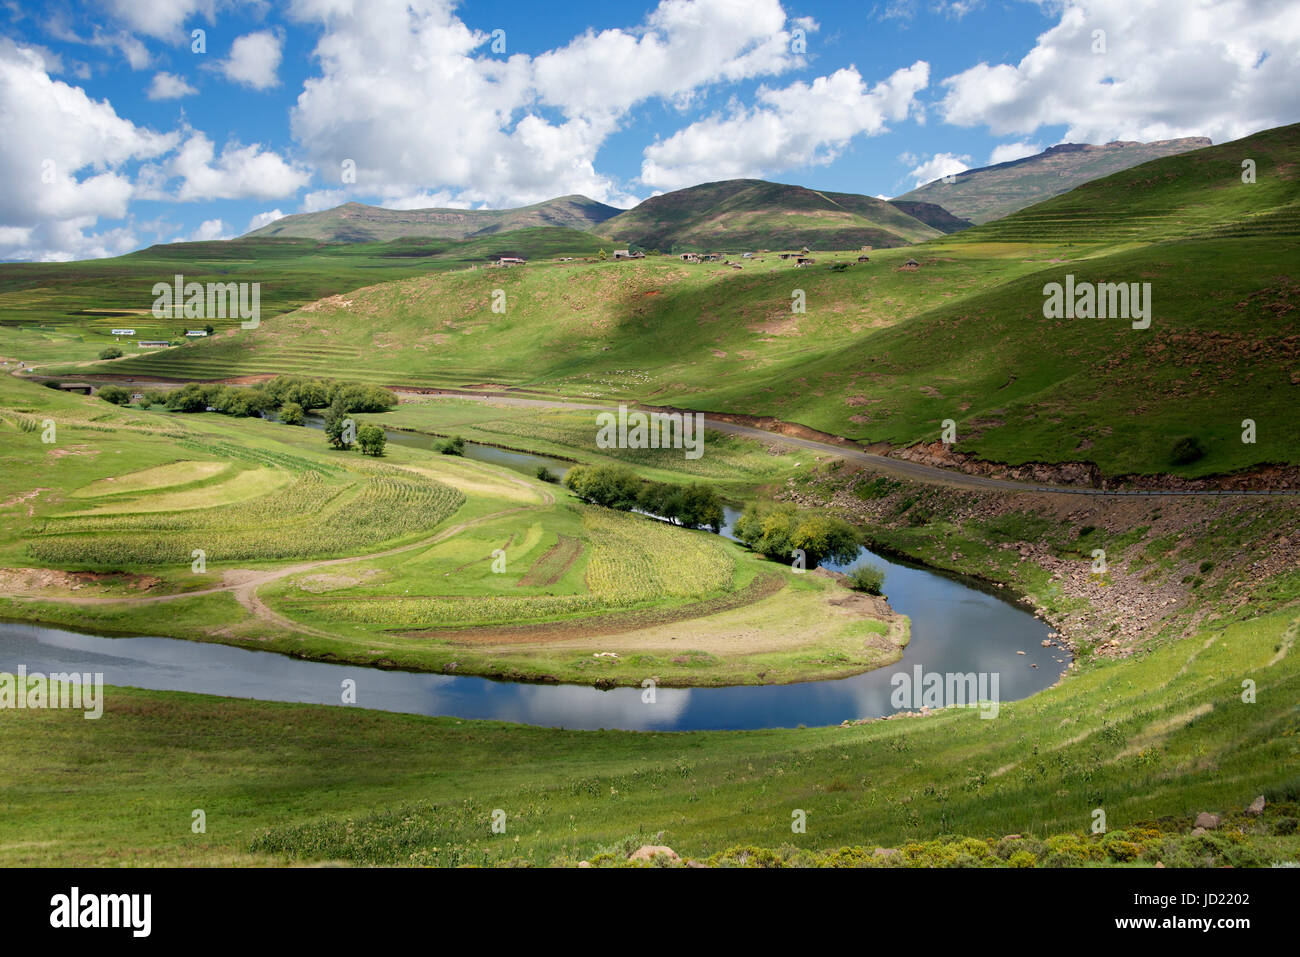 Paysage rural et Maletsunyane River District de Maseru Lesotho Afrique du Sud Banque D'Images